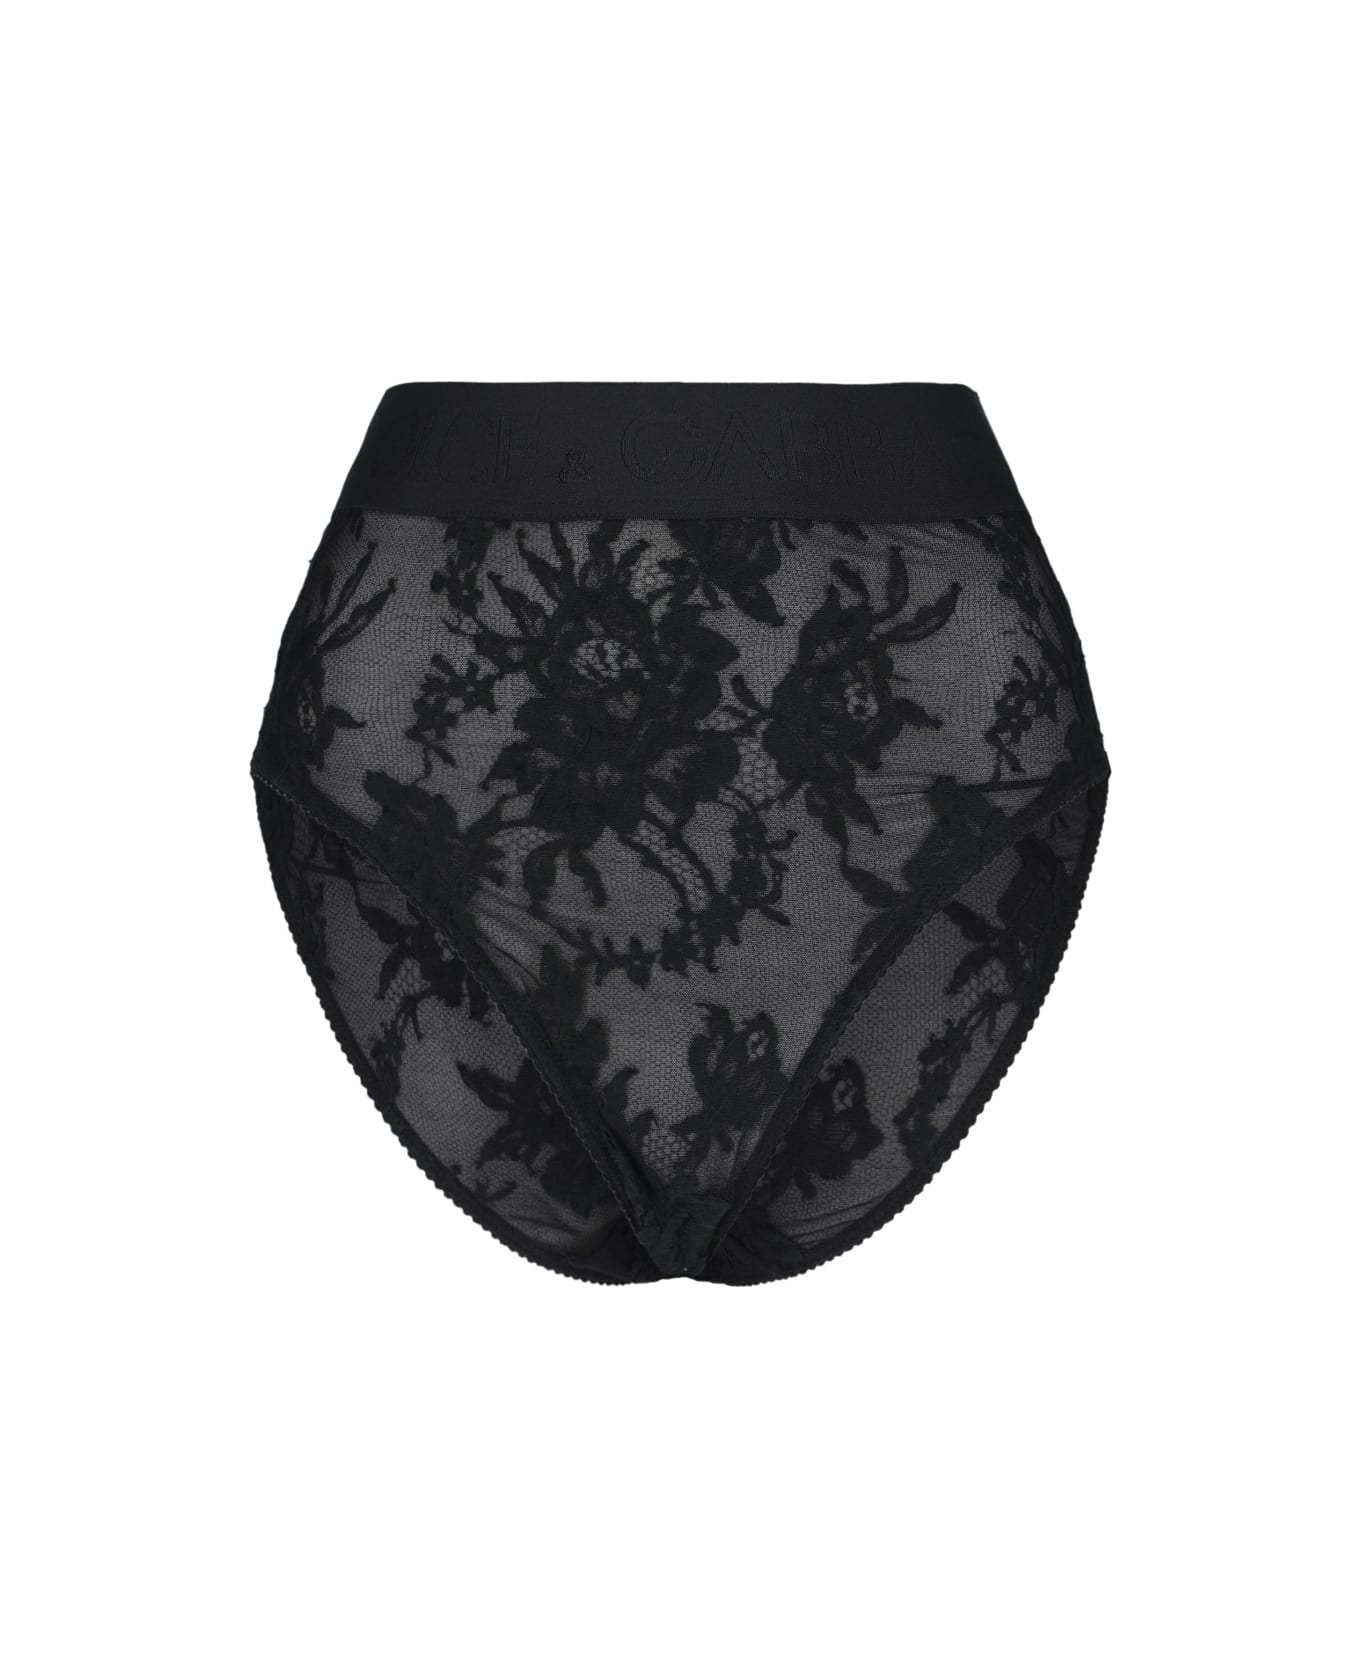 Dolce & Gabbana Underwear - Black